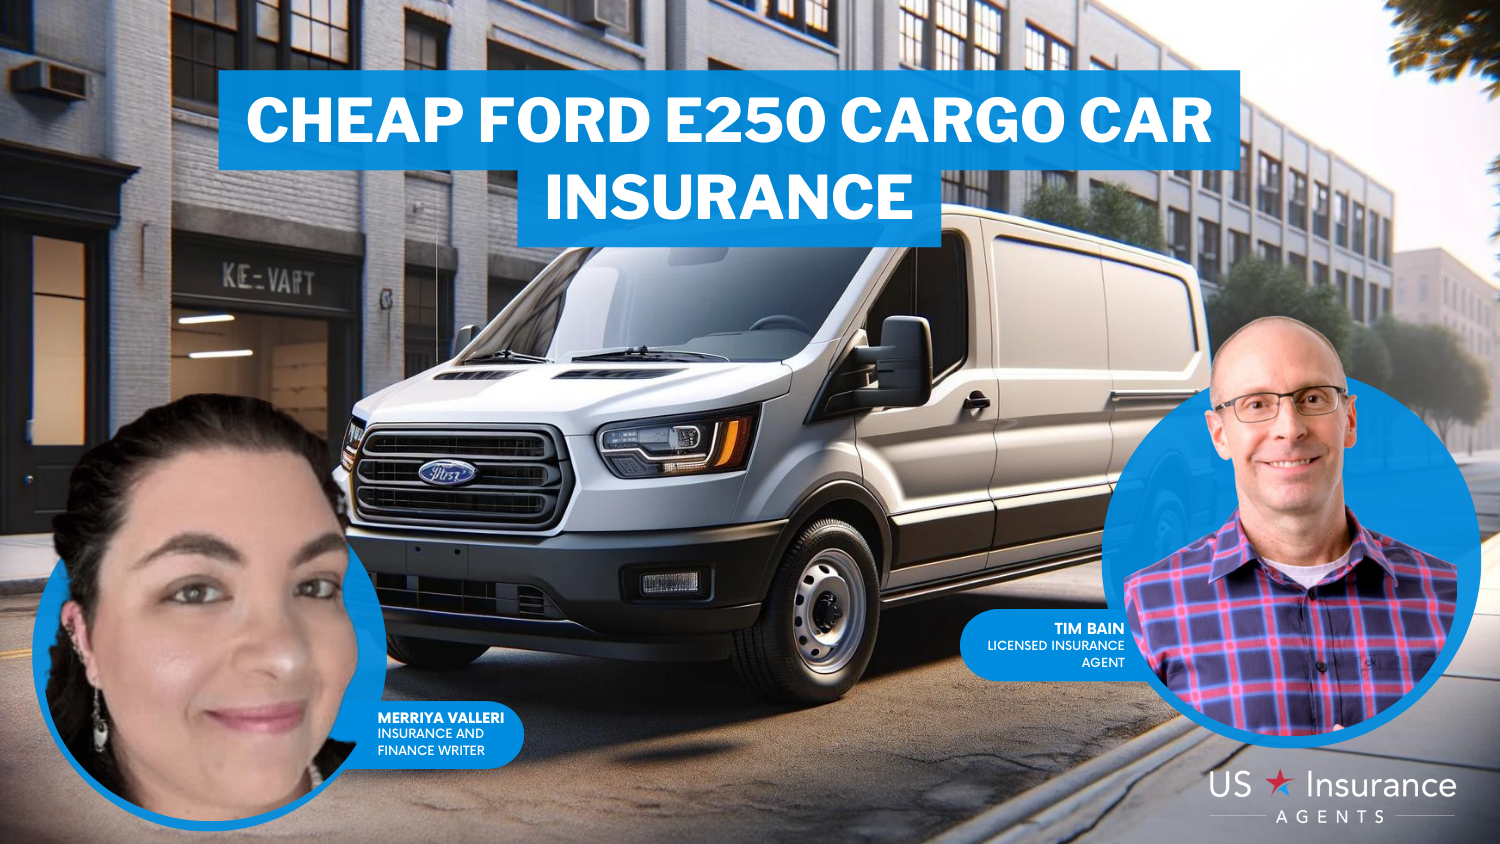 Cheap Ford E250 Cargo Car Insurance: Allstate, Progressive, and State Farm